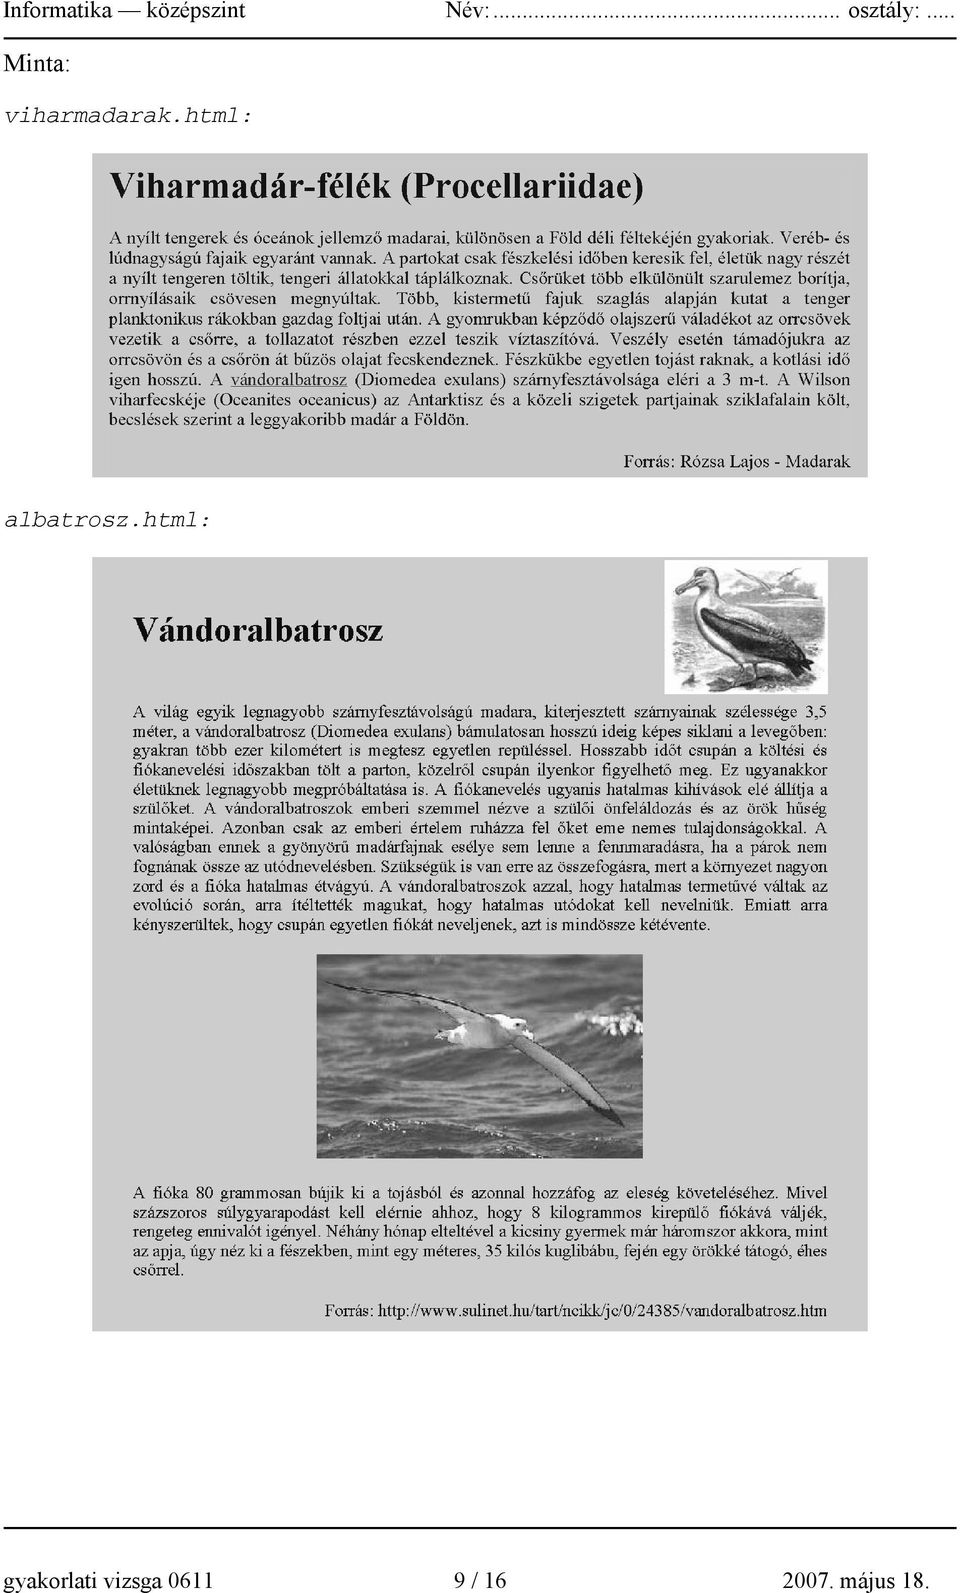 html: albatrosz.